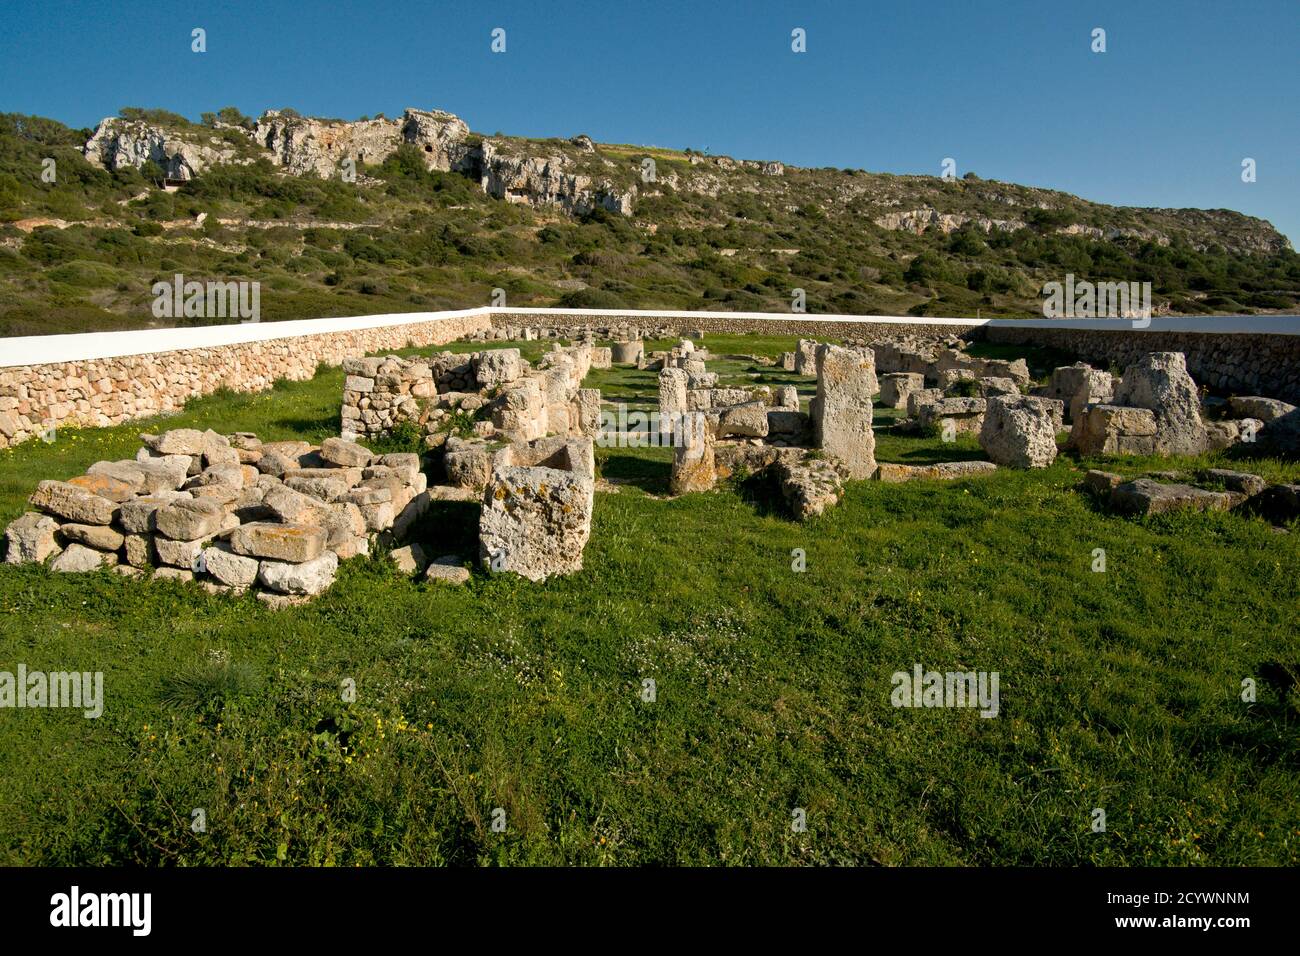 Basílica Paleocristiana de Son Bou, siglo V despues de Cristo.Menorca.Balearic islands.Spain. Stock Photo